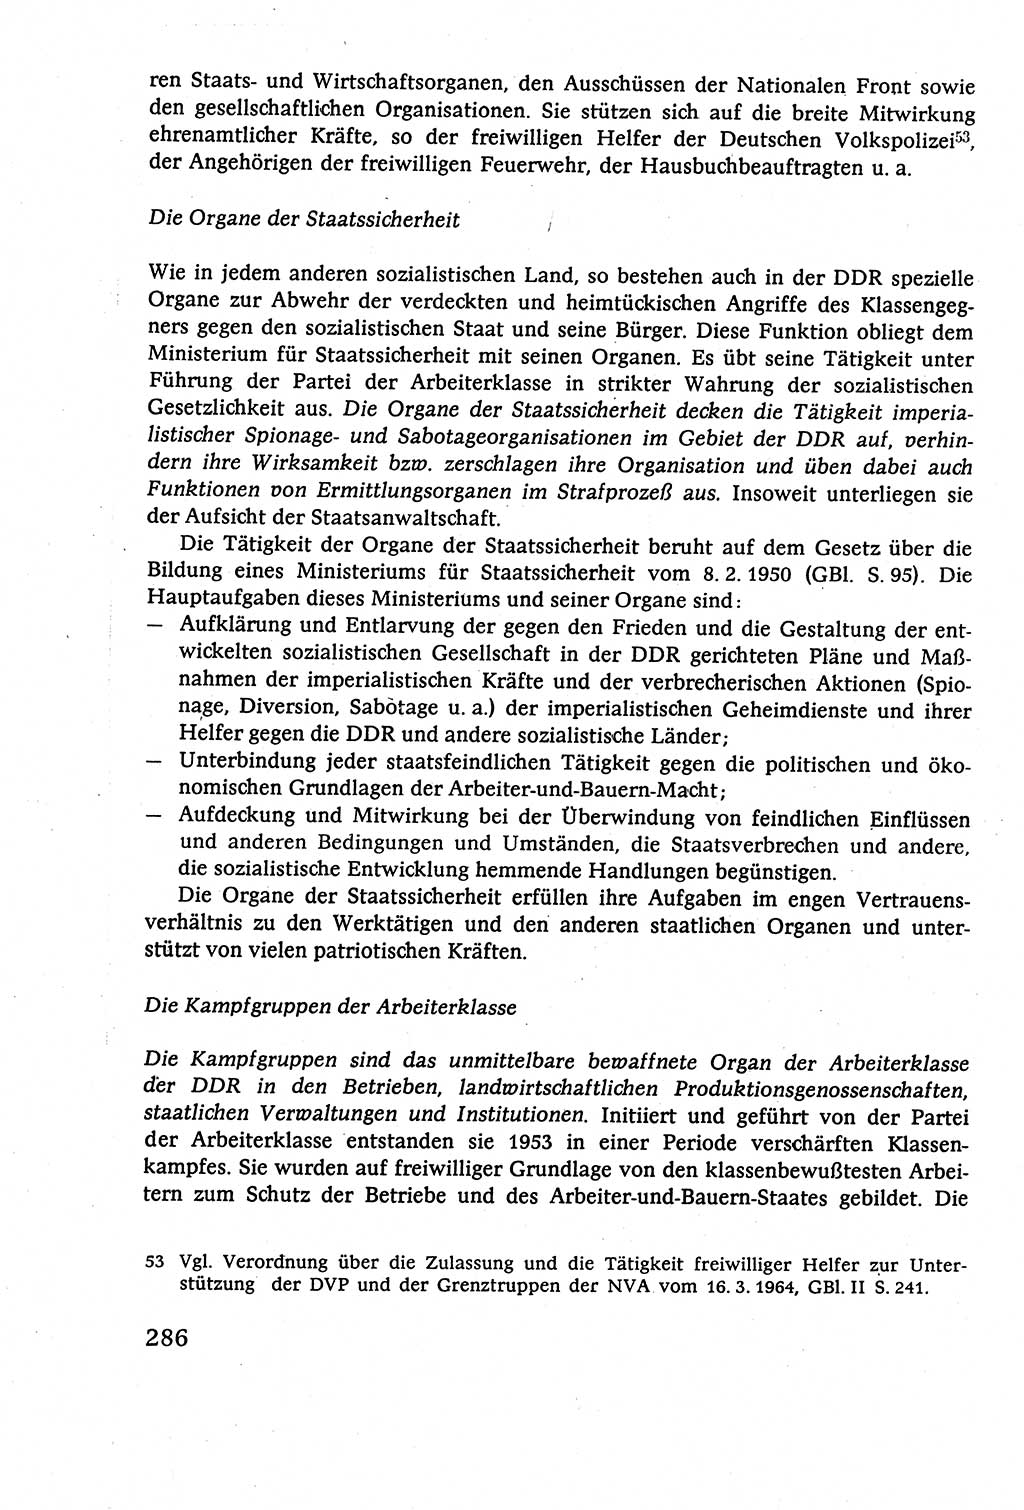 Staatsrecht der DDR (Deutsche Demokratische Republik), Lehrbuch 1977, Seite 286 (St.-R. DDR Lb. 1977, S. 286)